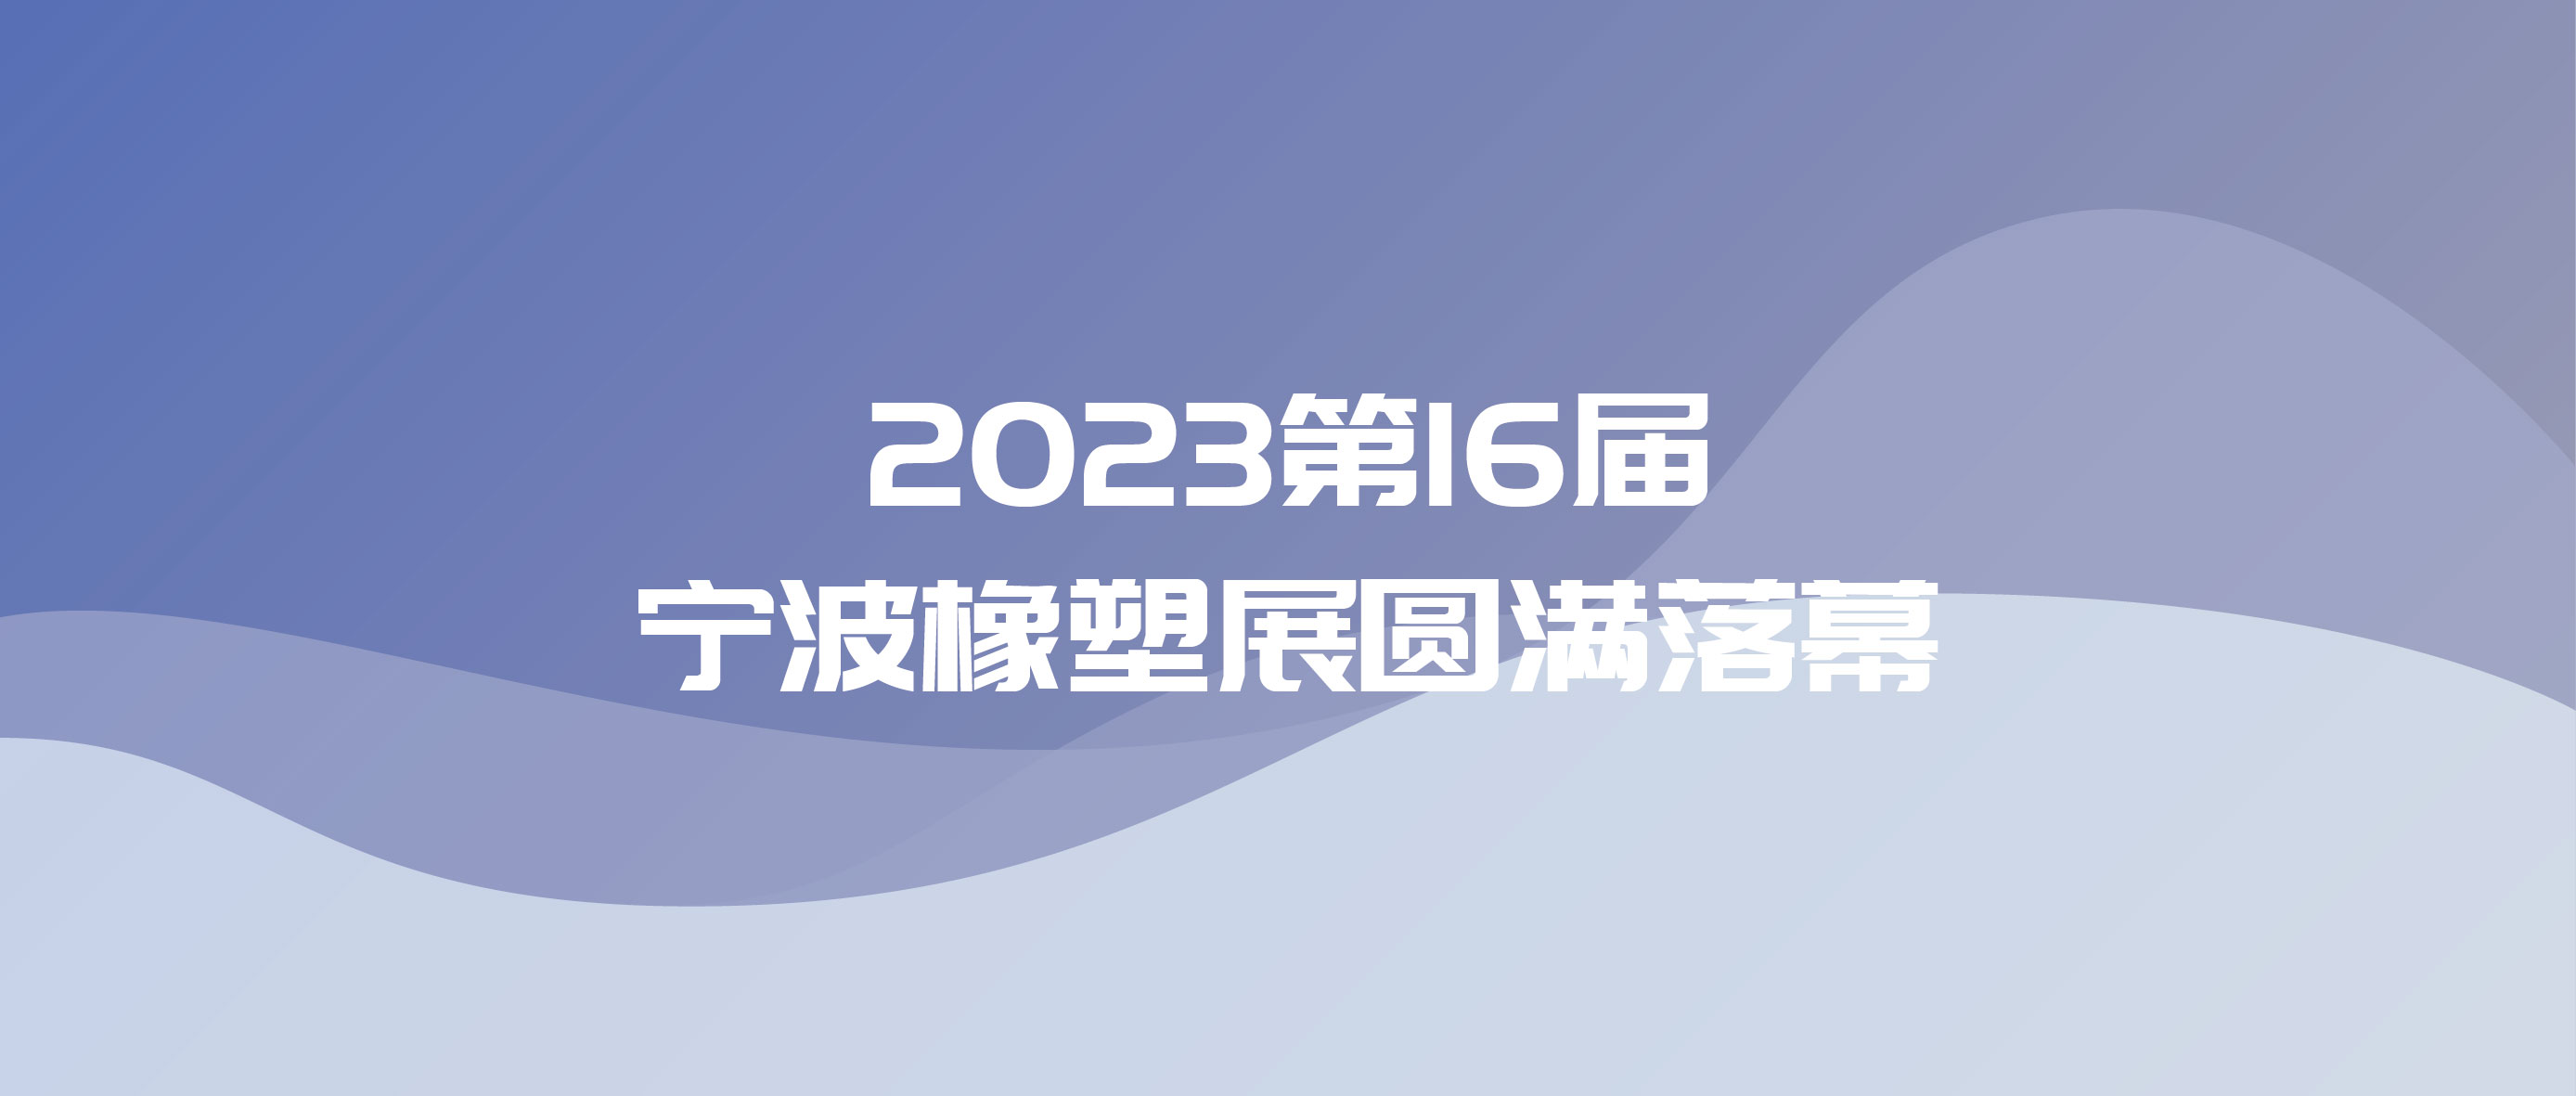 致敬科学|2023第16届宁波橡塑展圆满落幕